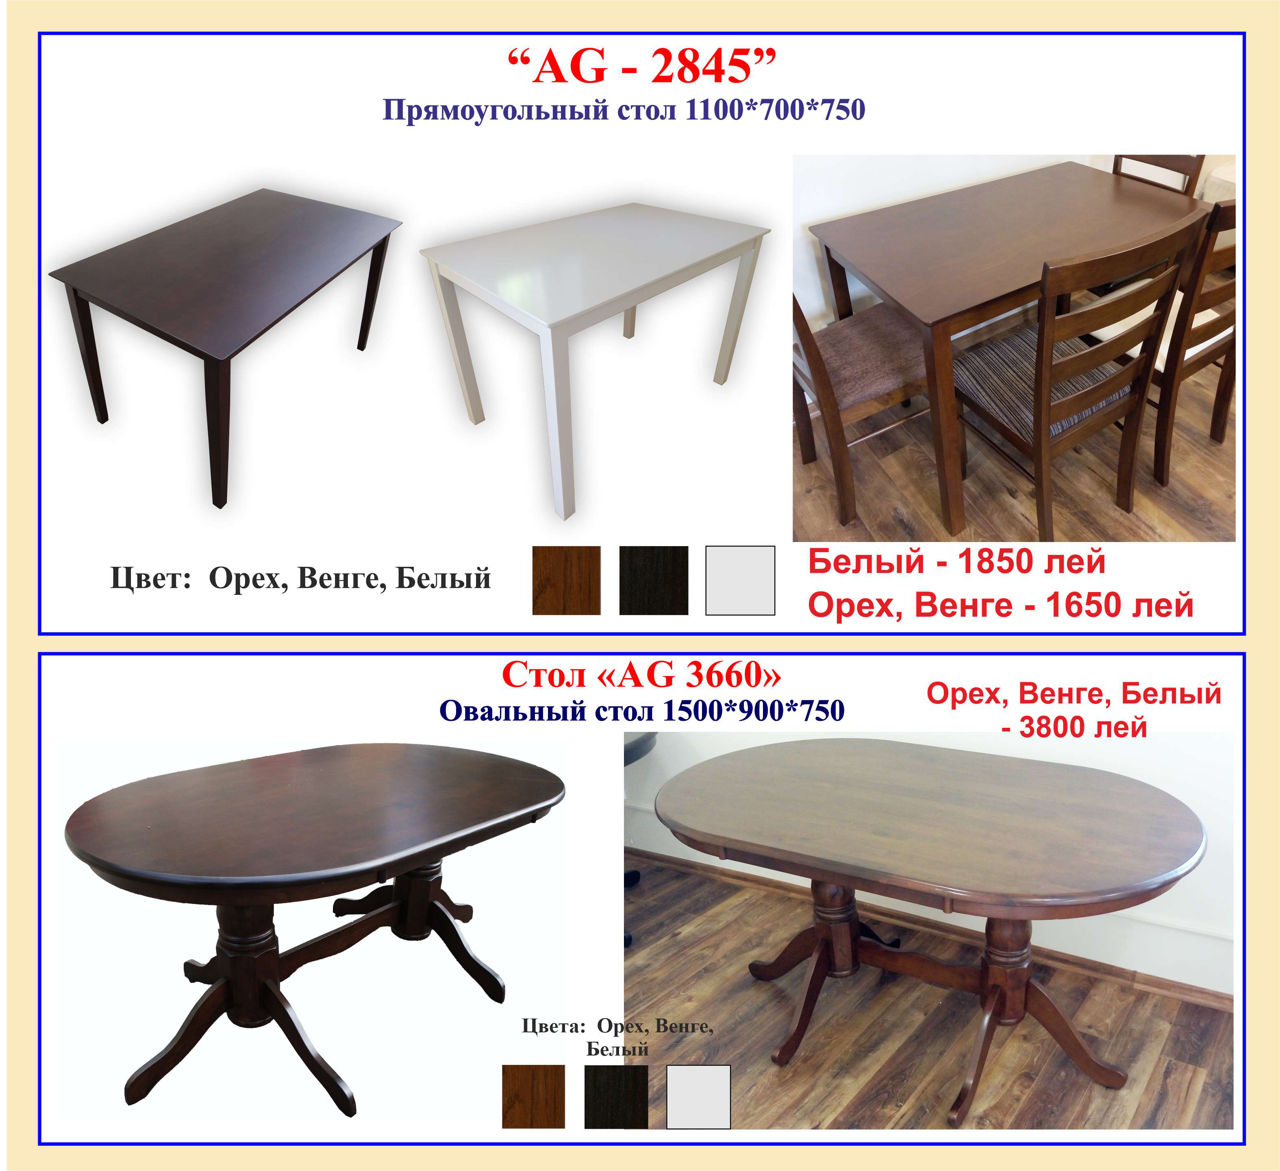 Современные стулья и столы из металла и стекла, обитые эко-кожей. Продажа в кредит! фото 8